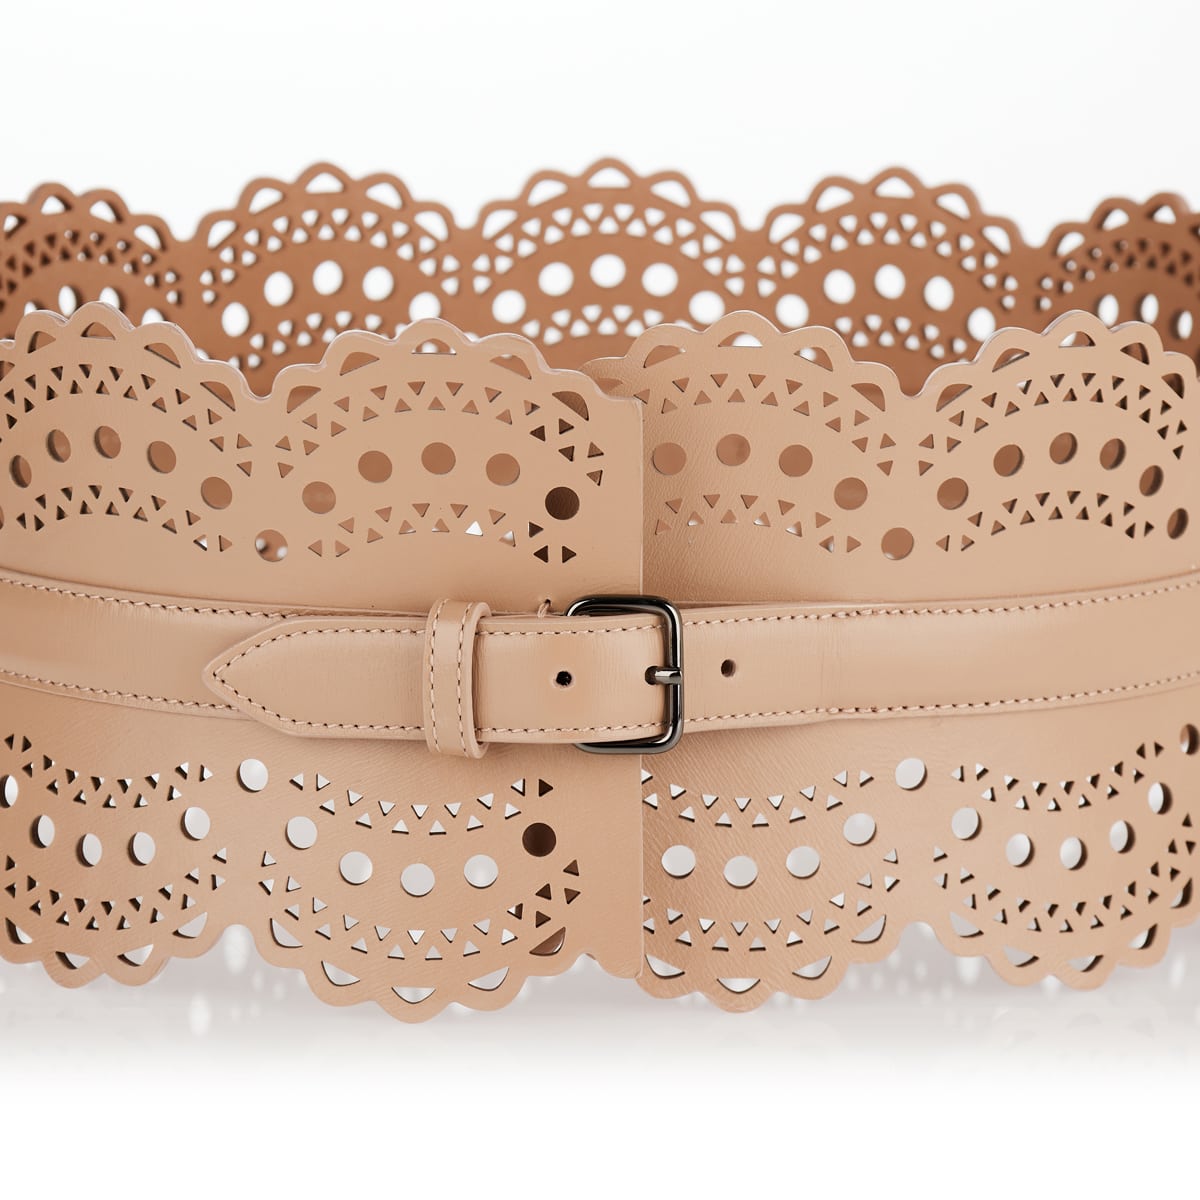 Laser-cut leather corset belt